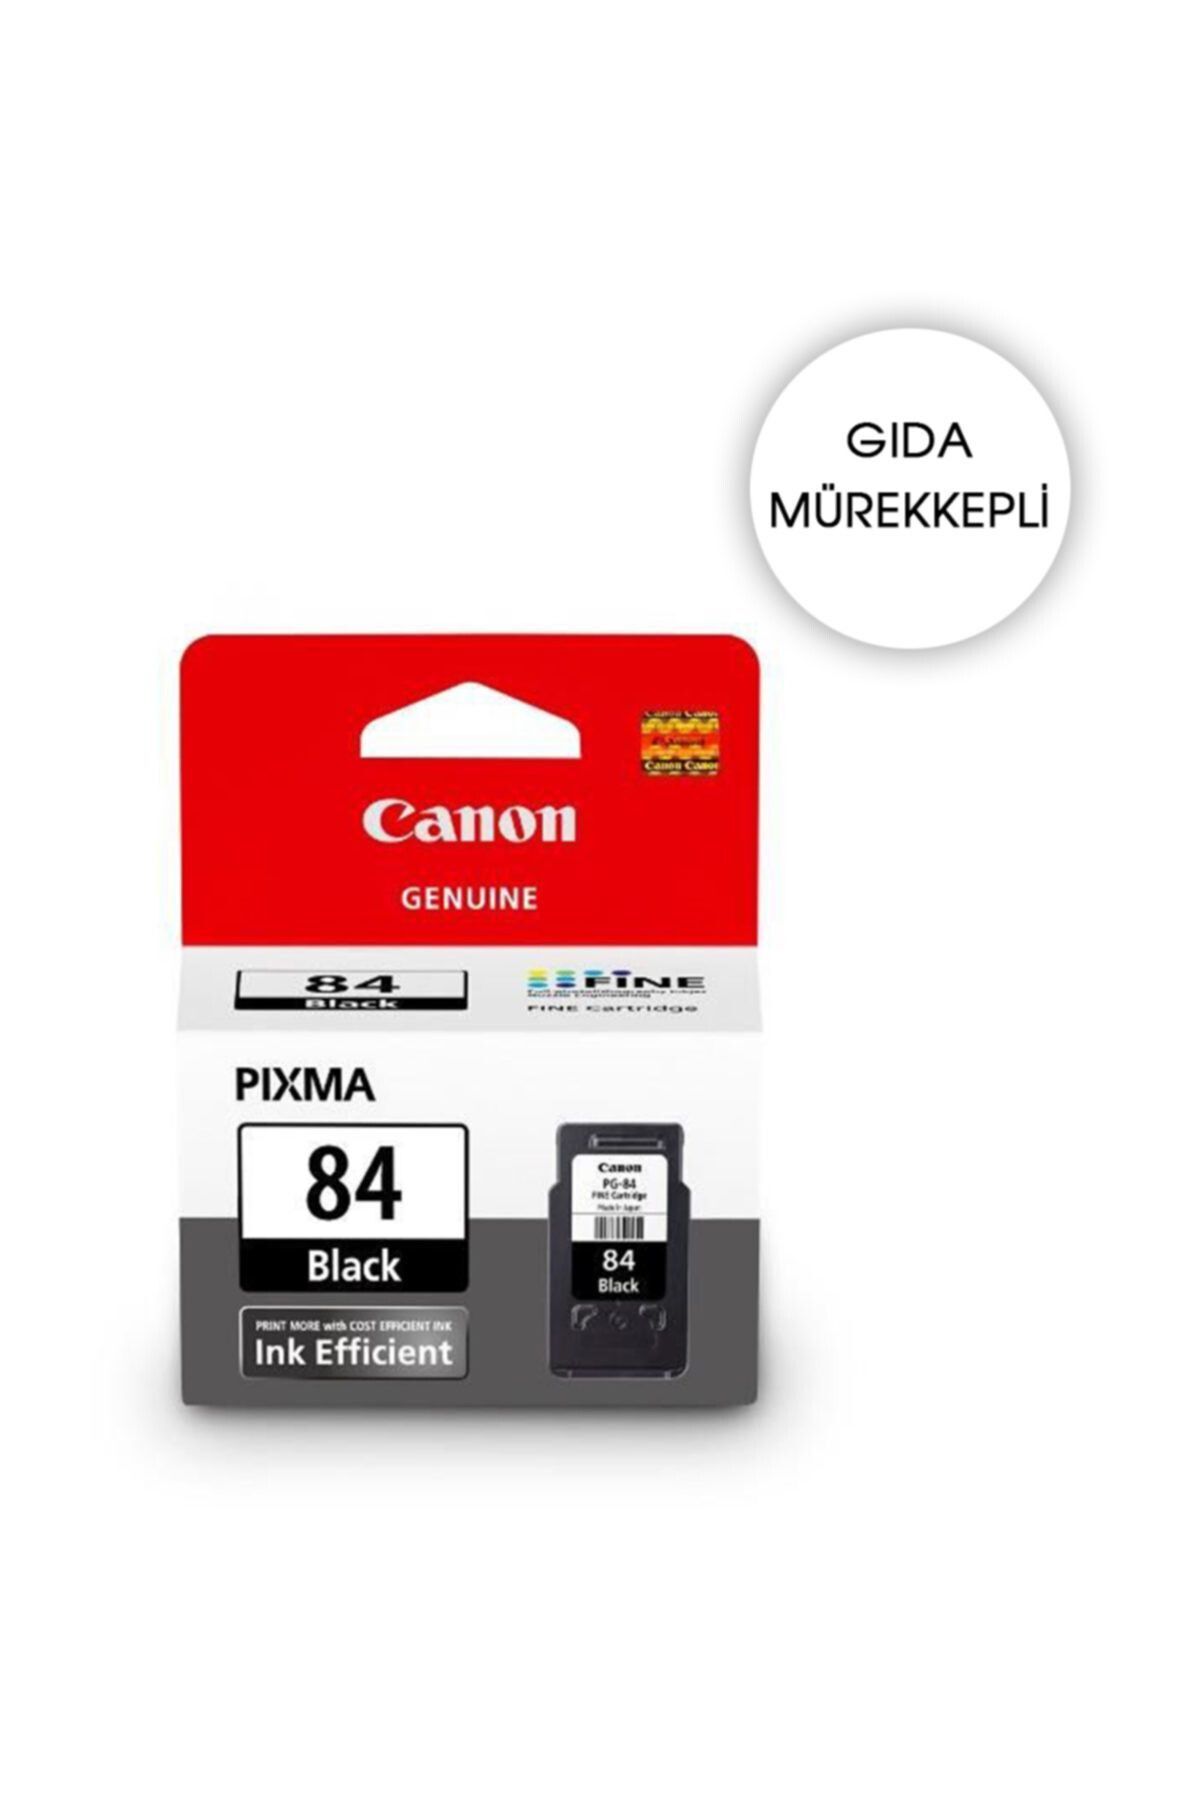 Canon GIDA KARTUŞU - PG-84 Siyah Mürekkep Kartuşu E514 Orjinal Kartuş (Bitmeyen kartuşa uyumlu delik